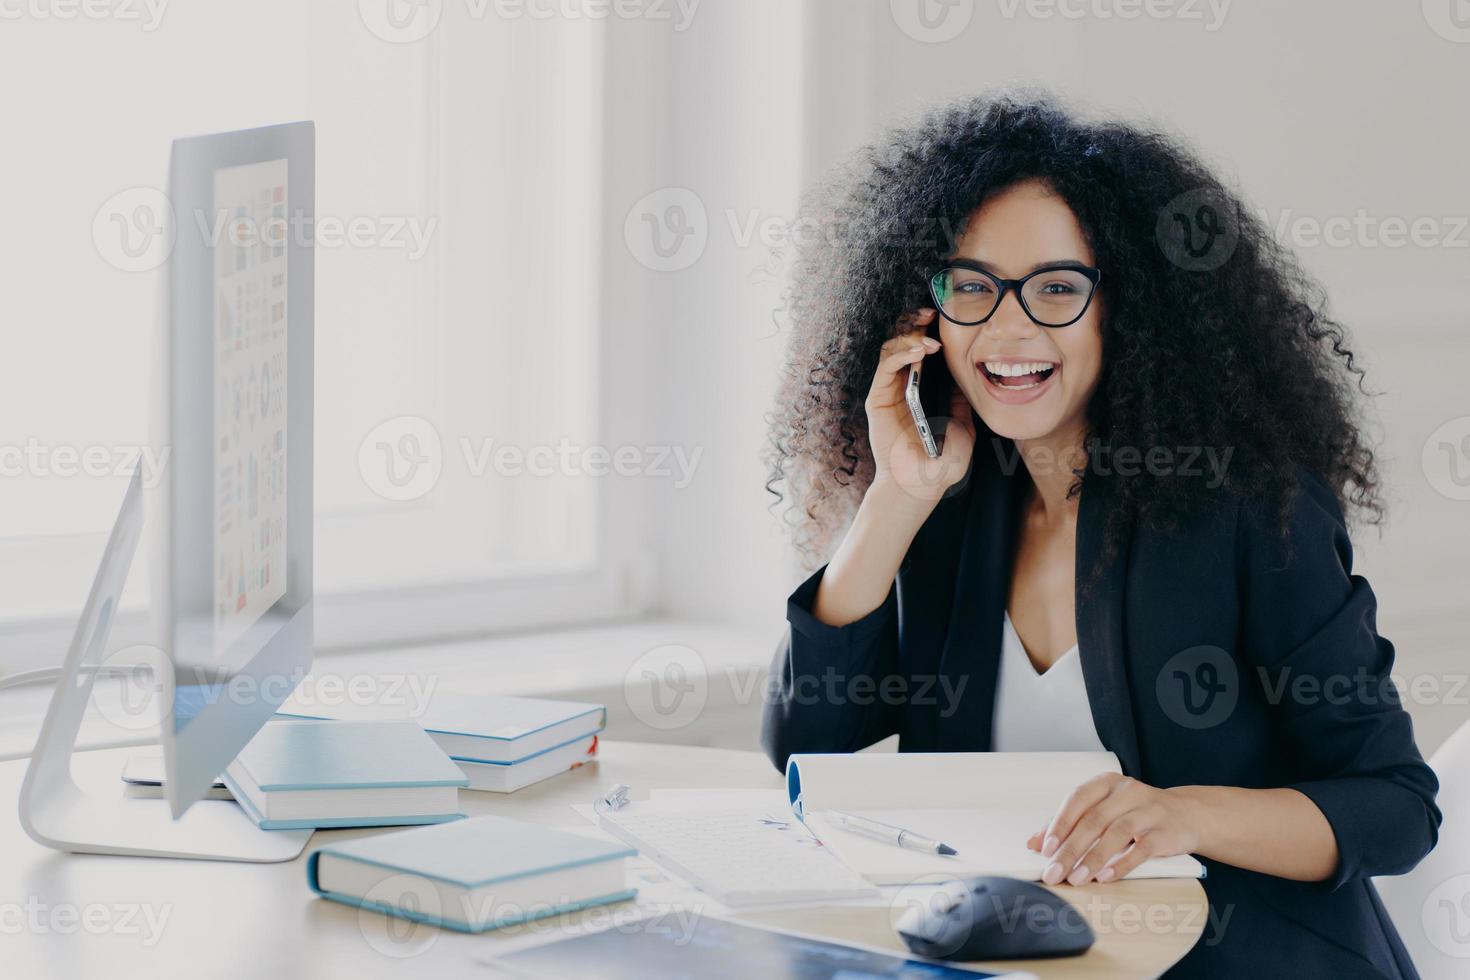 empresaria afroamericana optimista con peinado rizado, tiene un teléfono móvil, disfruta de una conversación telefónica con un colega, trabaja en una computadora, posa en el lugar de trabajo con un bloc de notas y libros foto